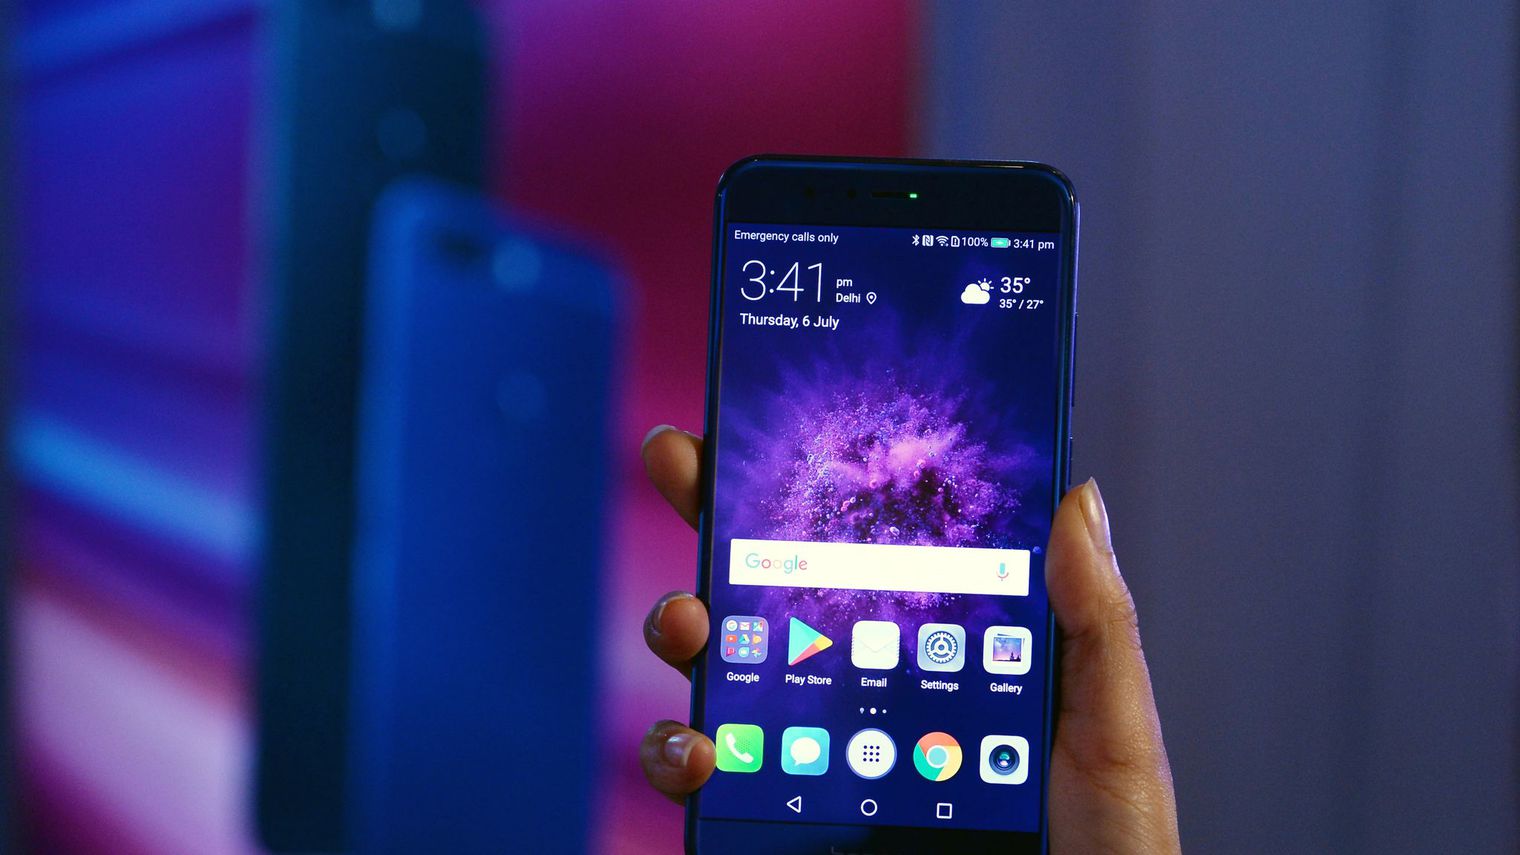 Le géant chinois des télécoms Huawei a dévoilé samedi une première puce d'intelligence artificielle pour mobile, prenant de cours ses deux concurrents immédiats, Samsung et Apple, lors du salon de l'électronique de Berlin (IFA) afp.com/SAJJAD HUSSAIN